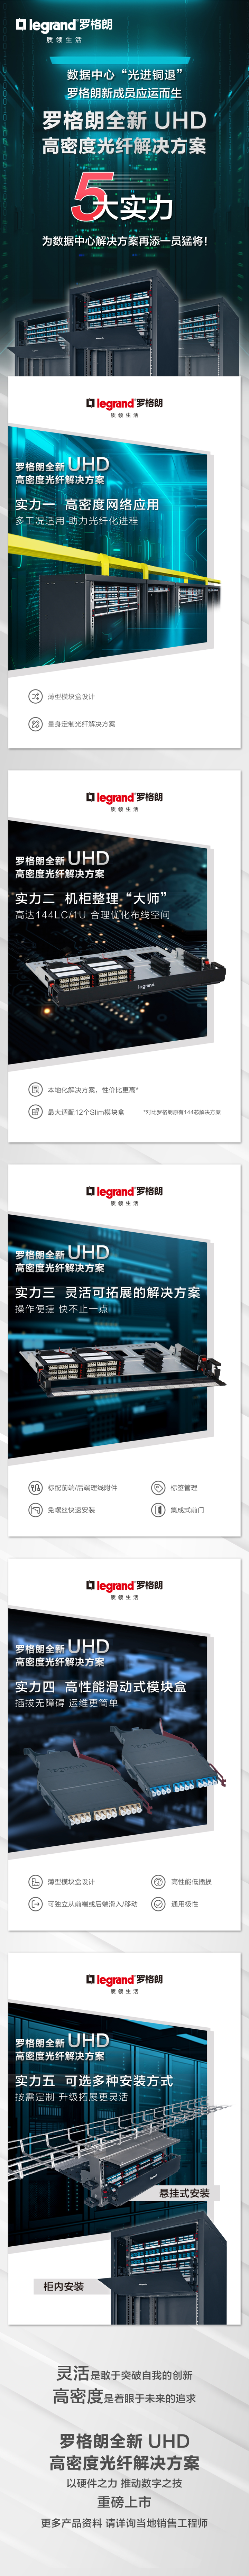 精进迭代 突破“线”制 罗格朗发布全新UHD高密度光纤解决方案